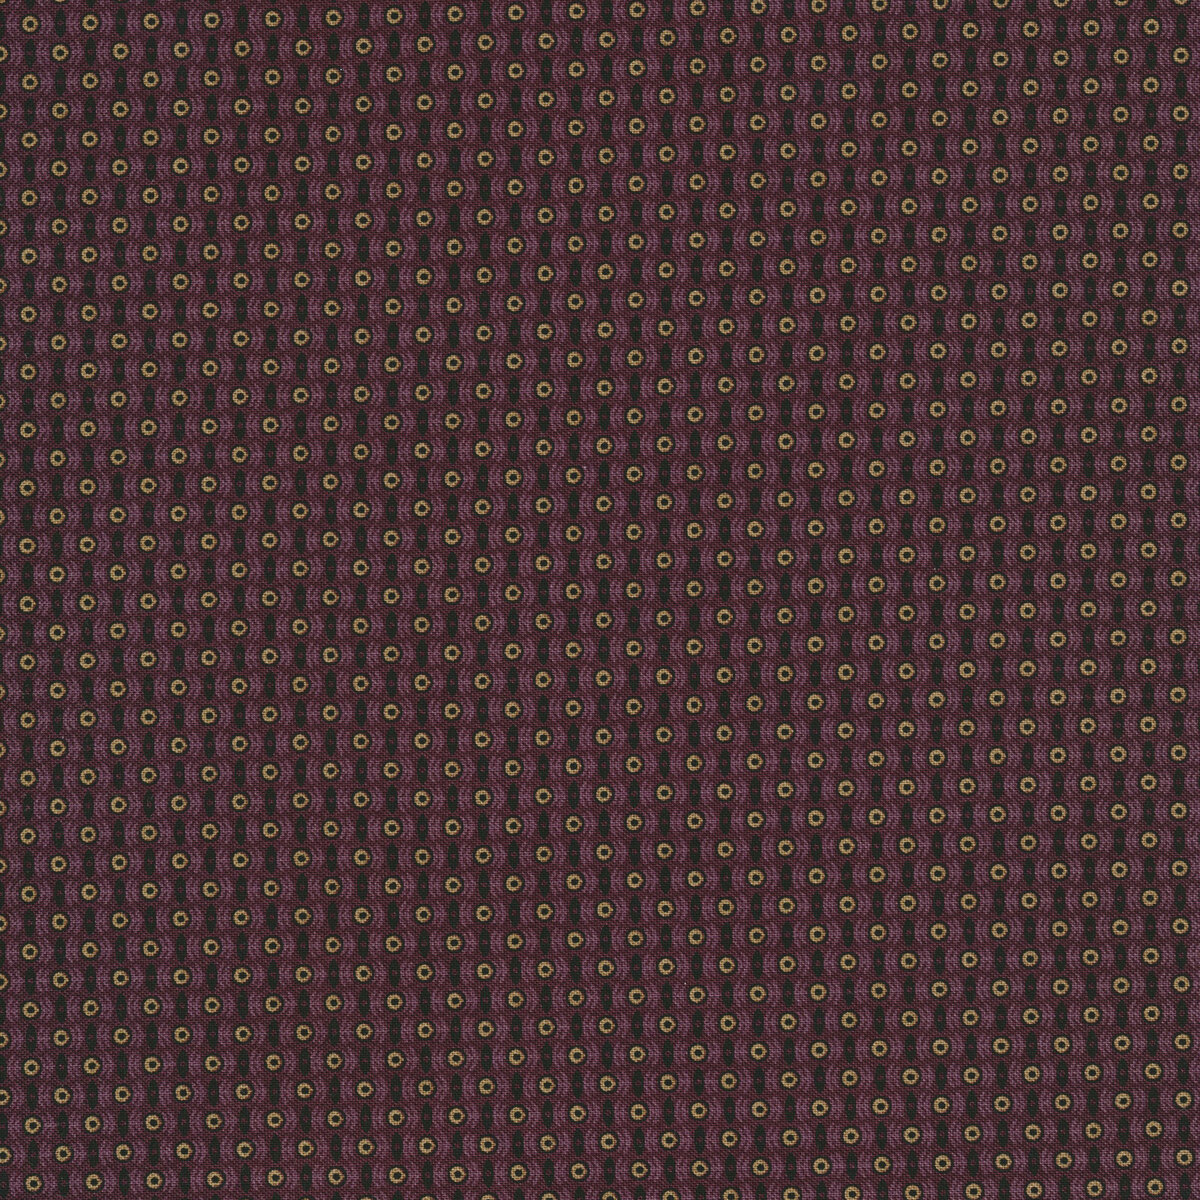 630 Best Louis Vuitton wallpaper ideas